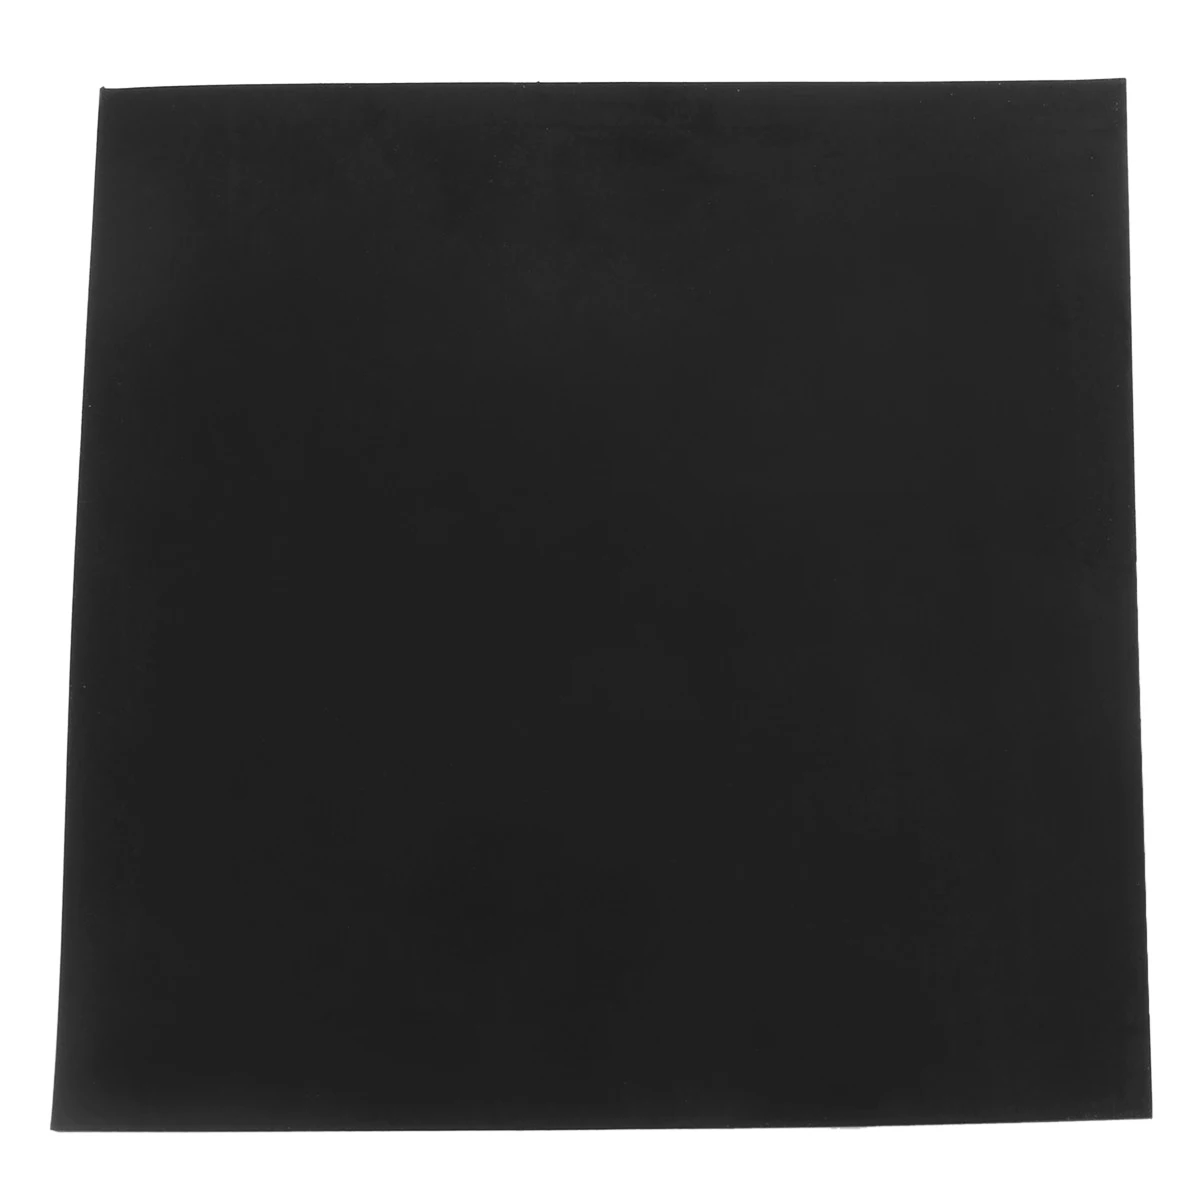 1 шт. высокая температура черная квадратная резиновая пластина Mayitr химические термостойкие к коррозии резиновые прокладки 152*152*3 мм